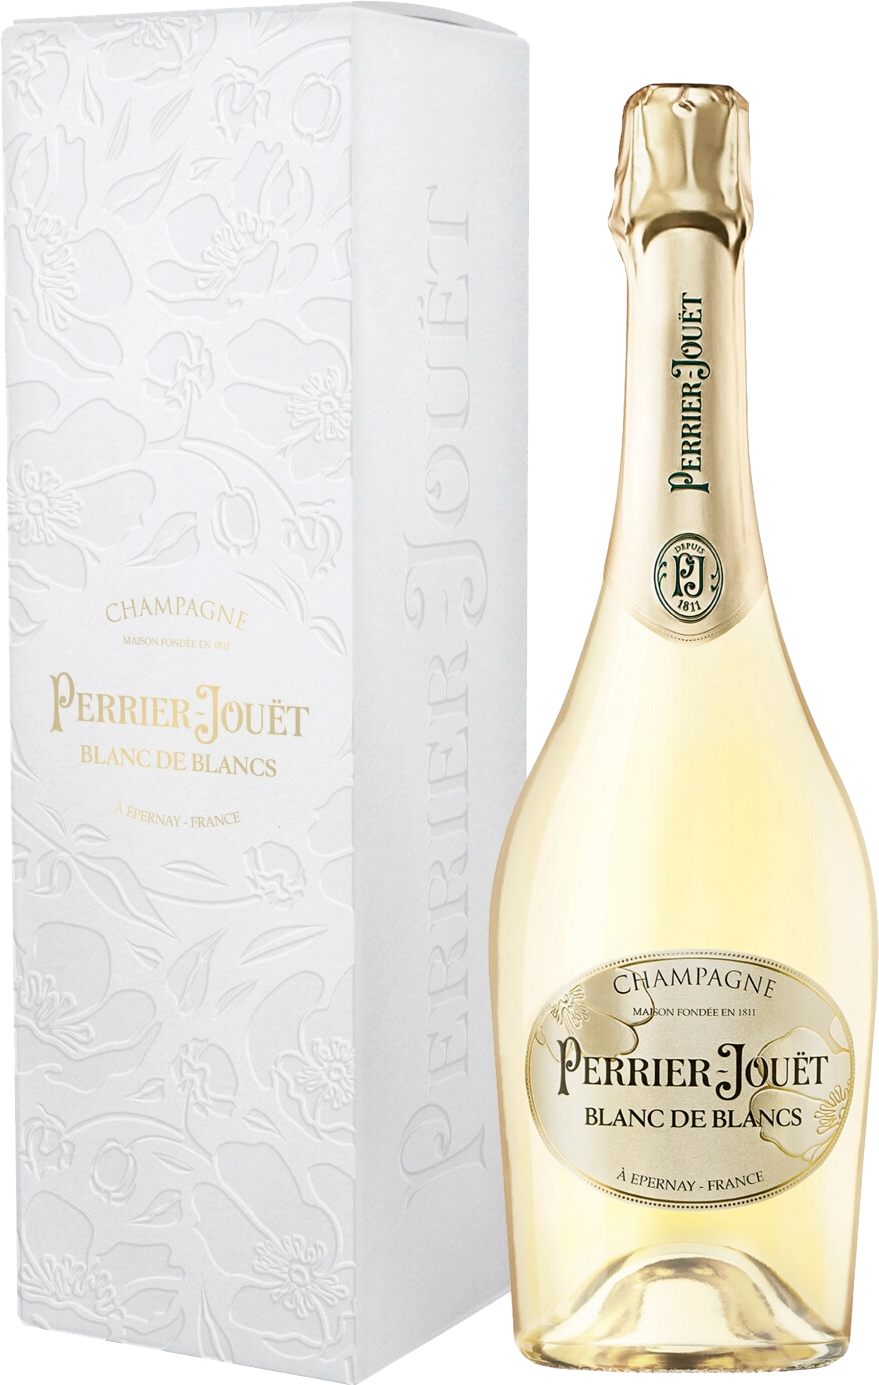 Perrier-Jouet Blanc De Blancs Champagne AOC Brut (gift box) champagne jeeper blanc de blancs grand reserve brut champagne aoc gift box